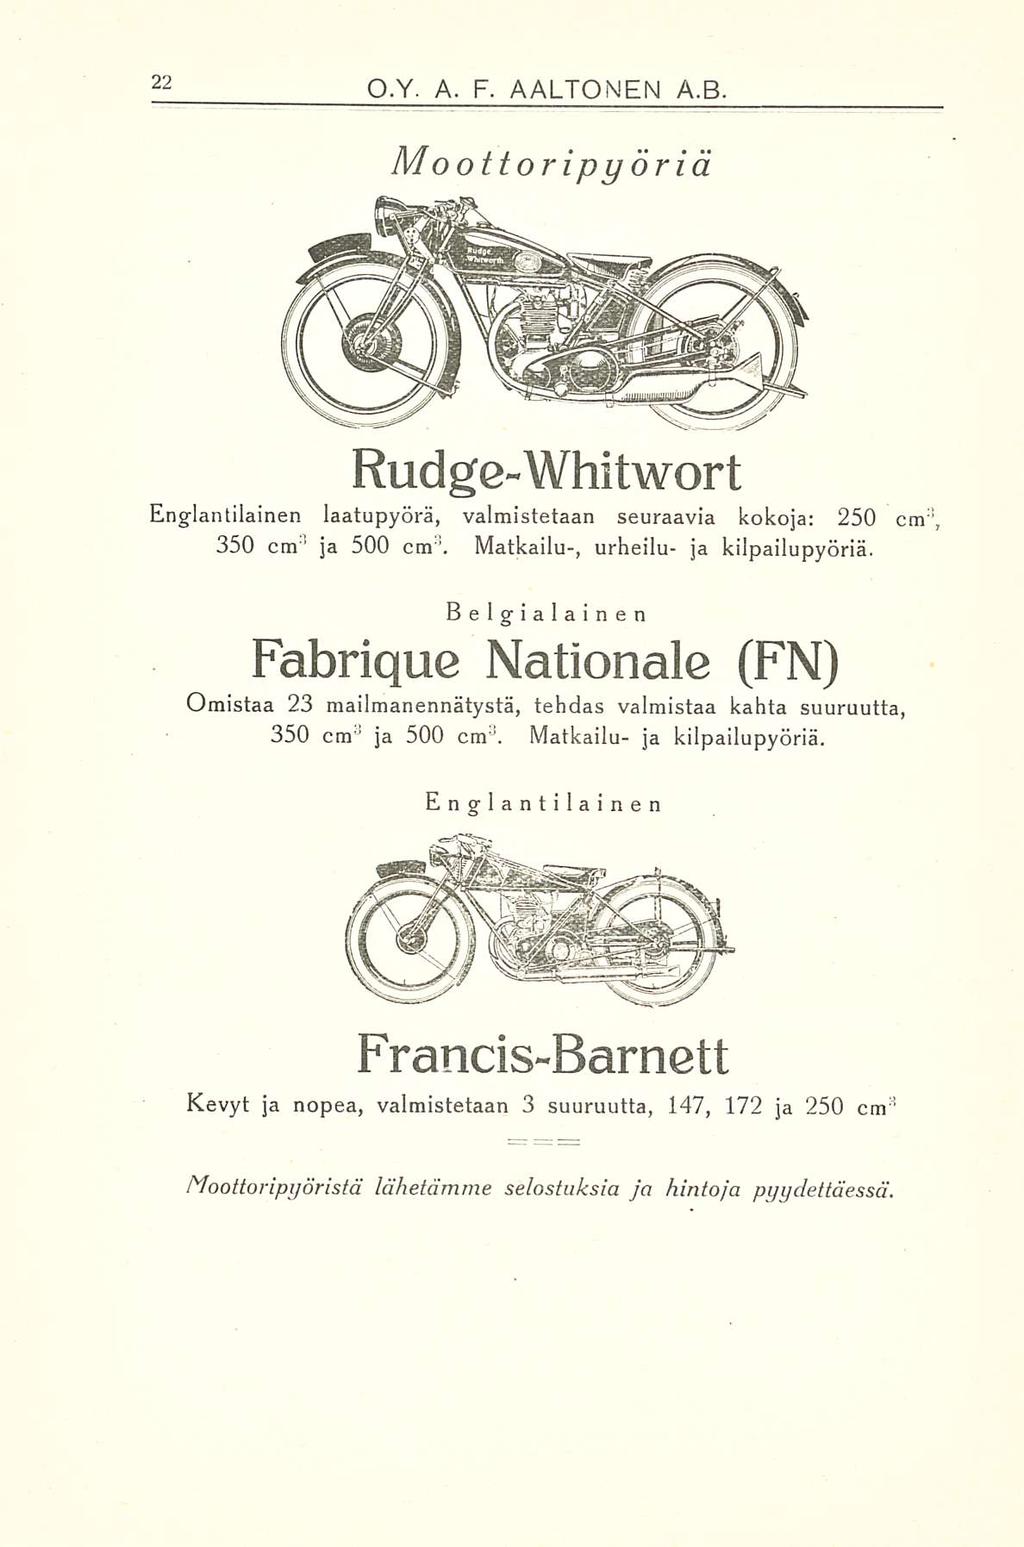 O.Y. A. F. AALTONEN A.B. Mo ottoripy öriä Rud ge-whitwort Englantilainen katupyörä, valmistetaan seuraavia kokoja: 250 cm 3, 350 cm 3 ja 500 cm '. Matkailu-, urheilu- ja kilpailupyöriä.